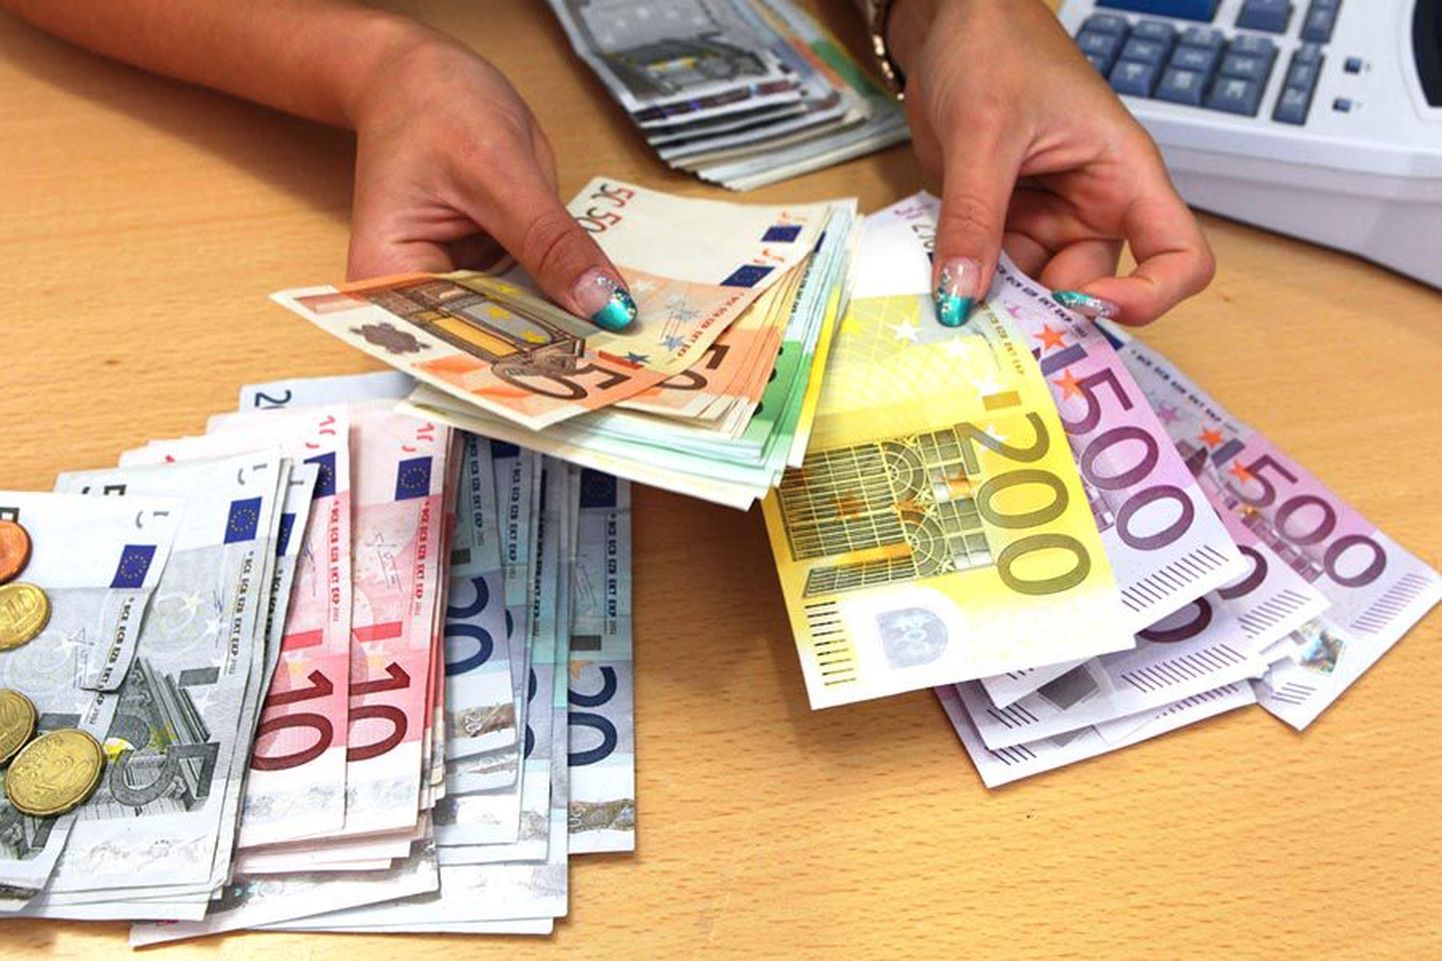 Kõrgeim palgamäär on seaduse järgi 5200 eurot, mis arvutatakse kroonidesse ametliku vahetuskursi alusel.